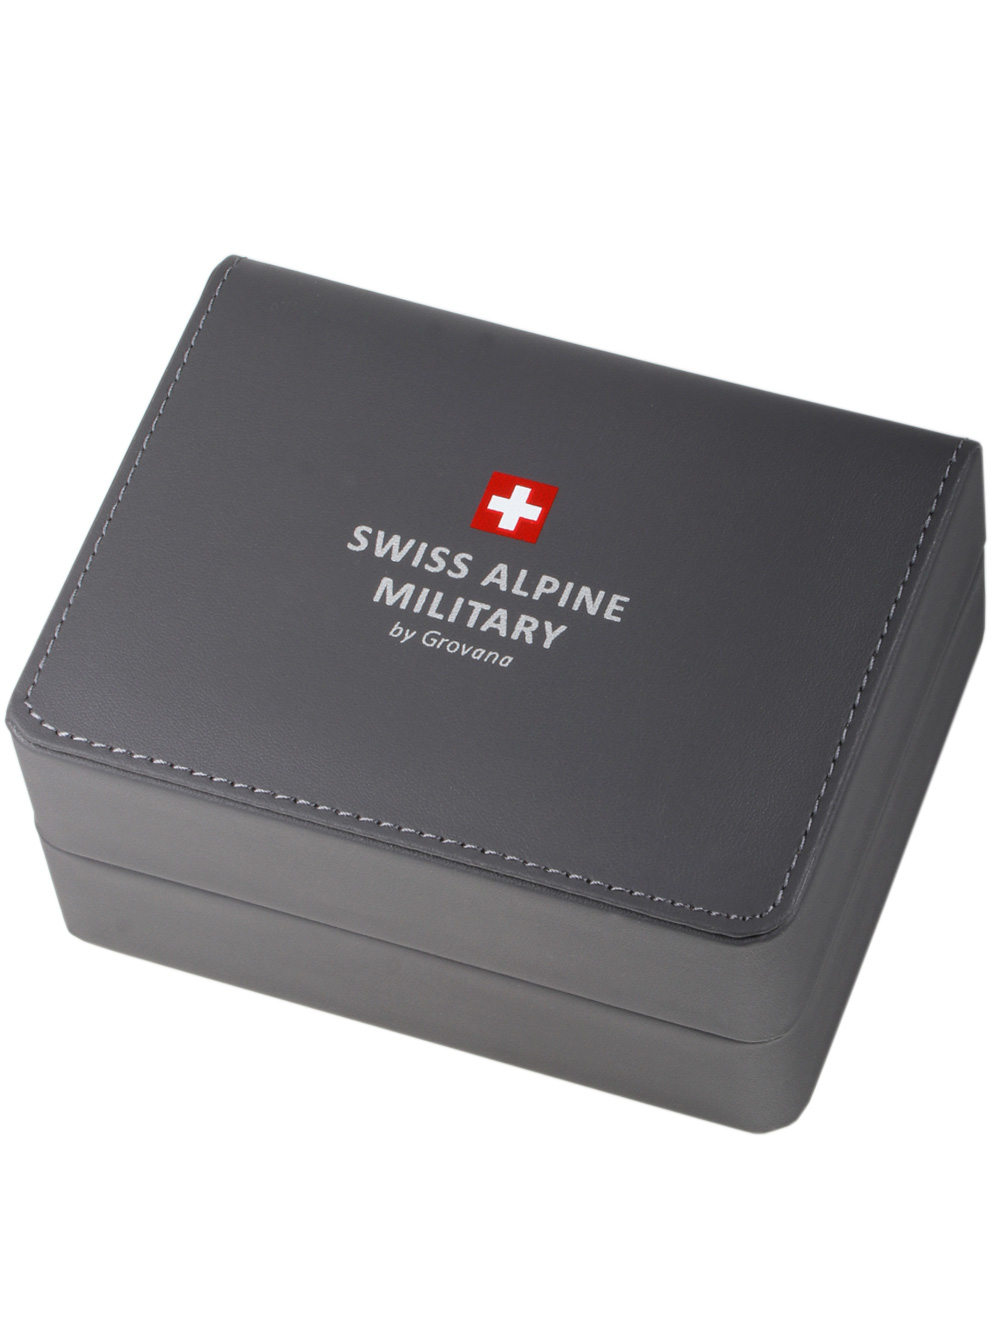 Zegarek męski Swiss Alpine Military 7095.2135